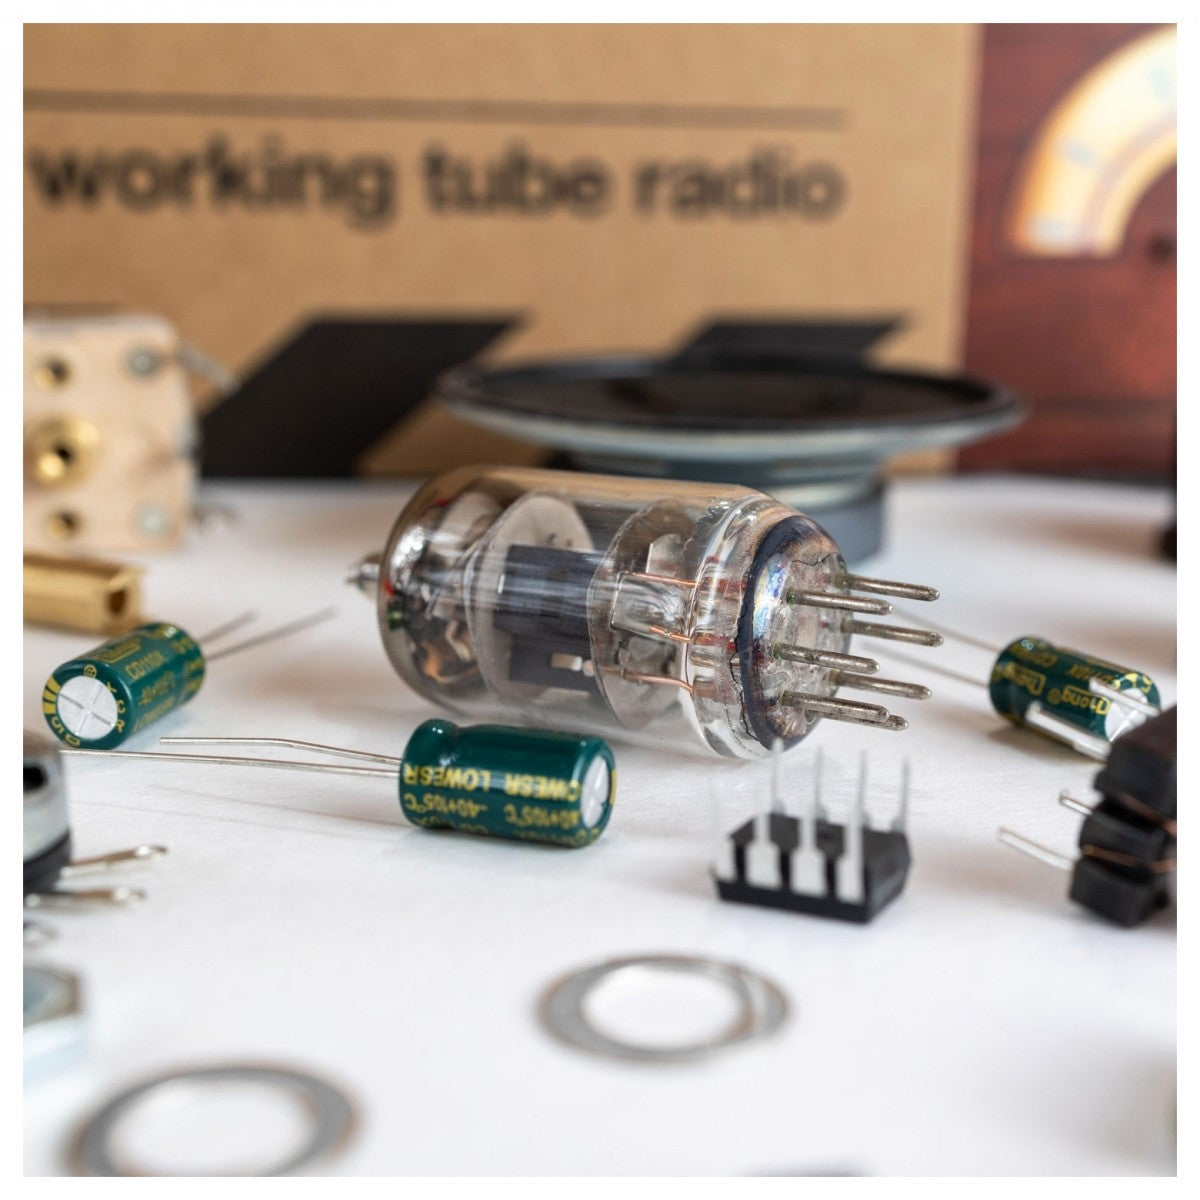 EIGHT Build Your Own Tube Radio Kit